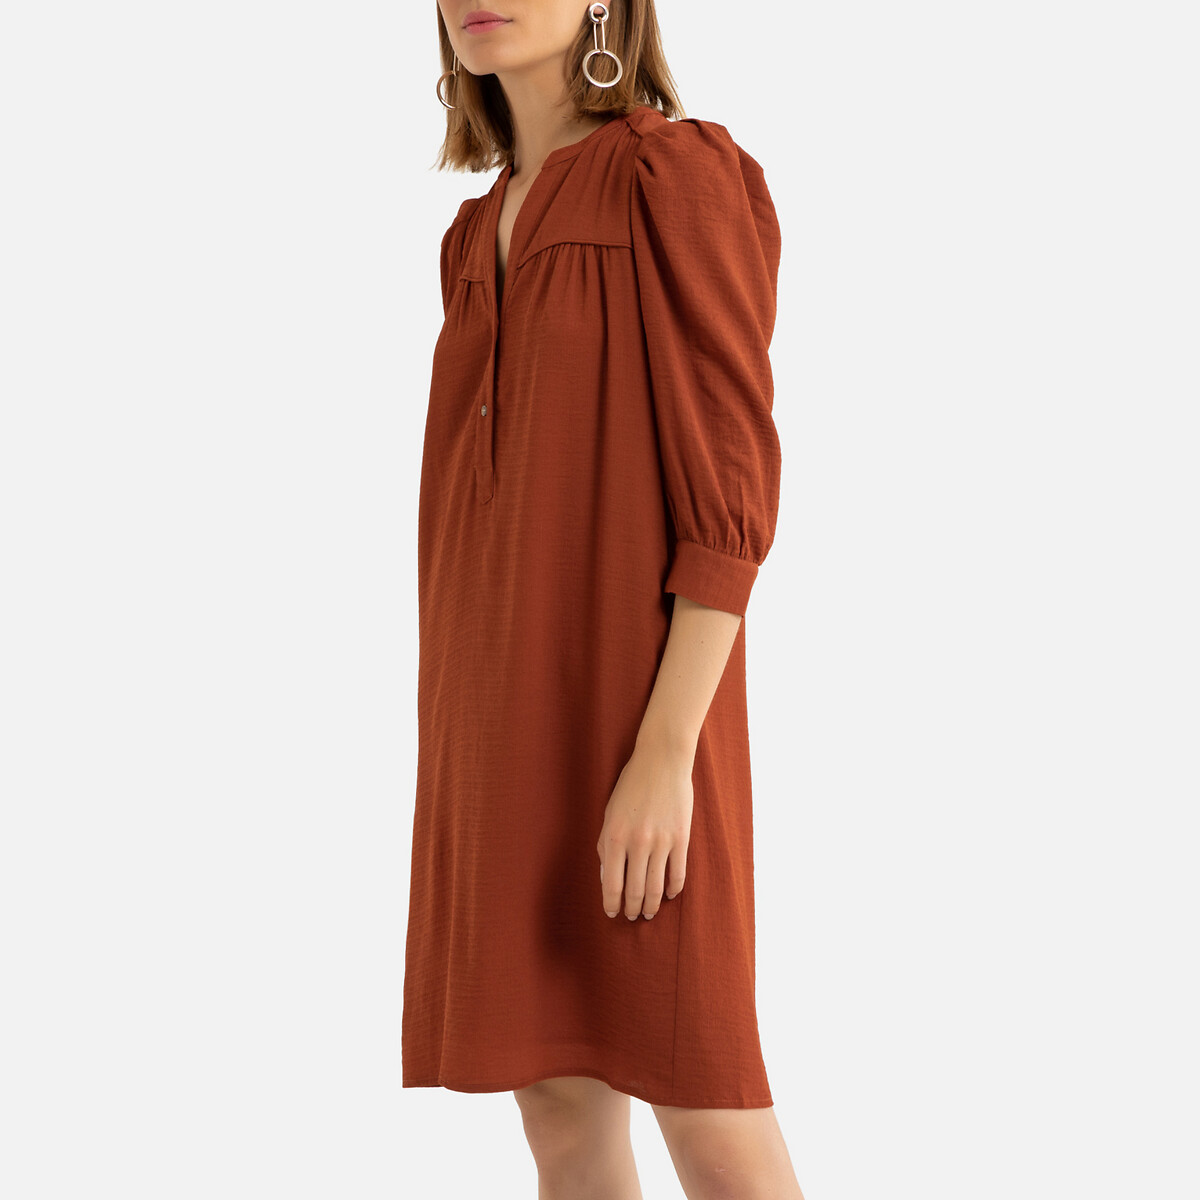 Платье La Redoute Короткое на пуговицах длинные рукава 2(M) красный, размер 2(M) Короткое на пуговицах длинные рукава 2(M) красный - фото 1